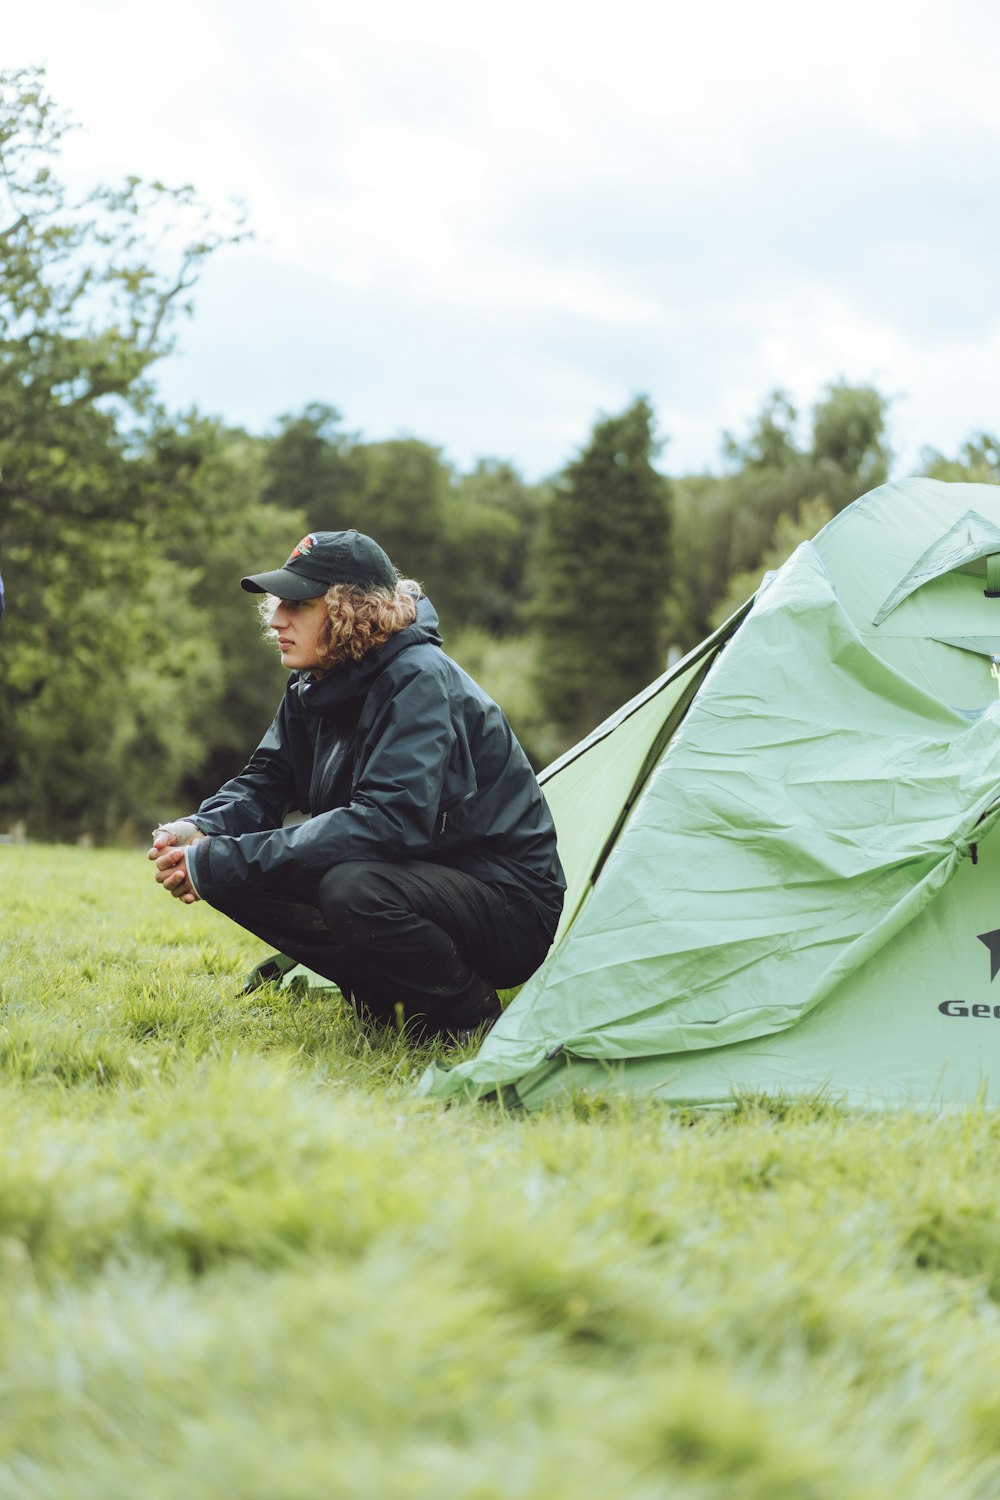 homem na jaqueta preta sentado na tenda verde durante o dia